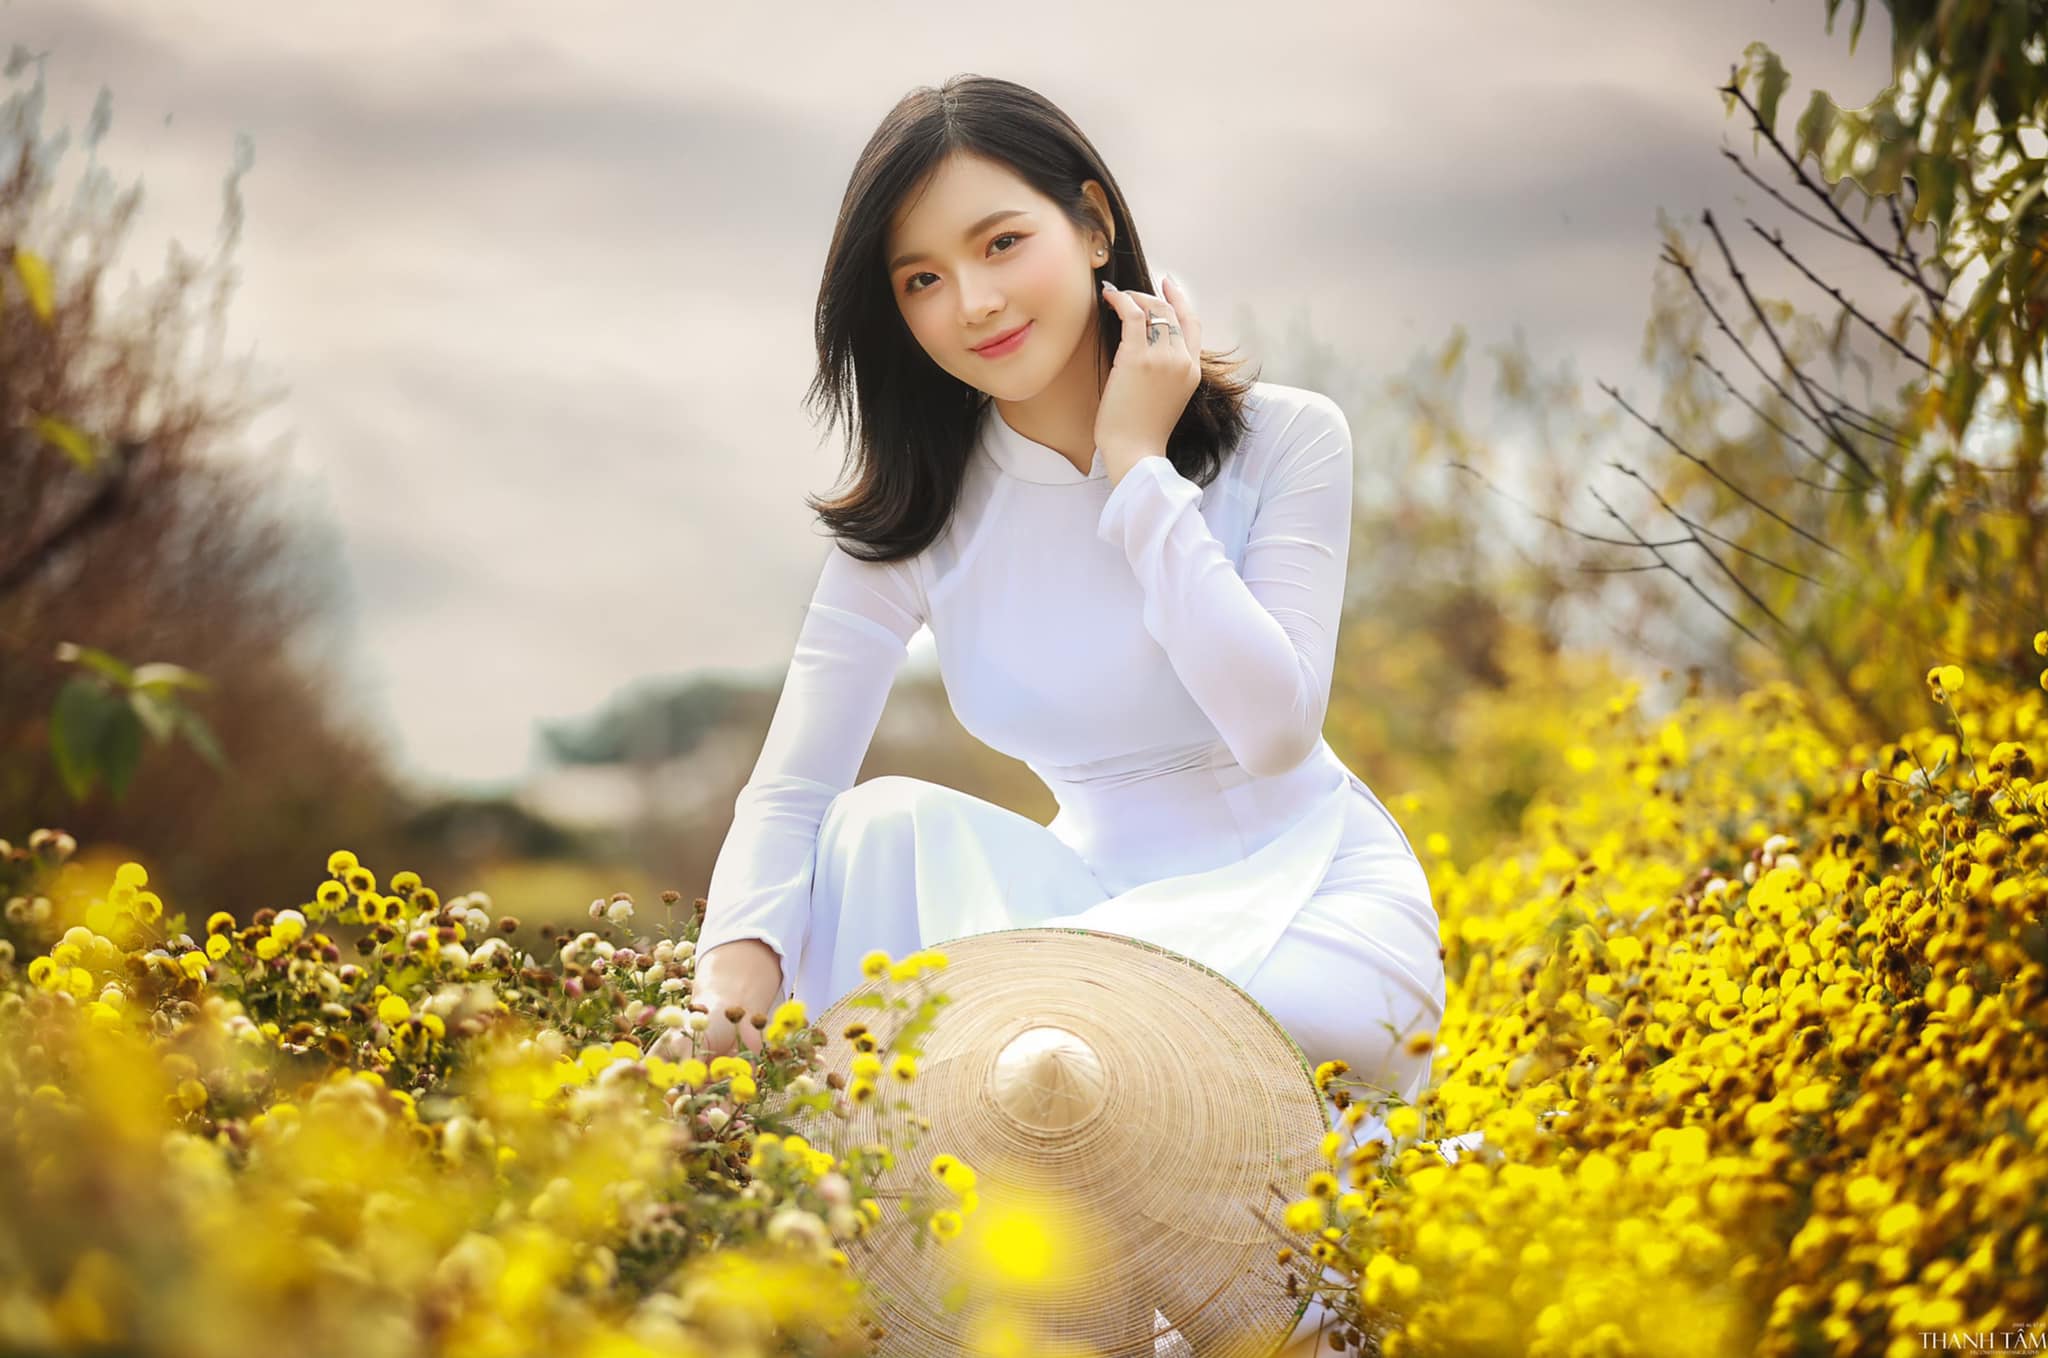 Ngắm hot girl Hà Thành đẹp như tiên giáng trần trong tà áo dài trắng giữa cánh đồng hoa